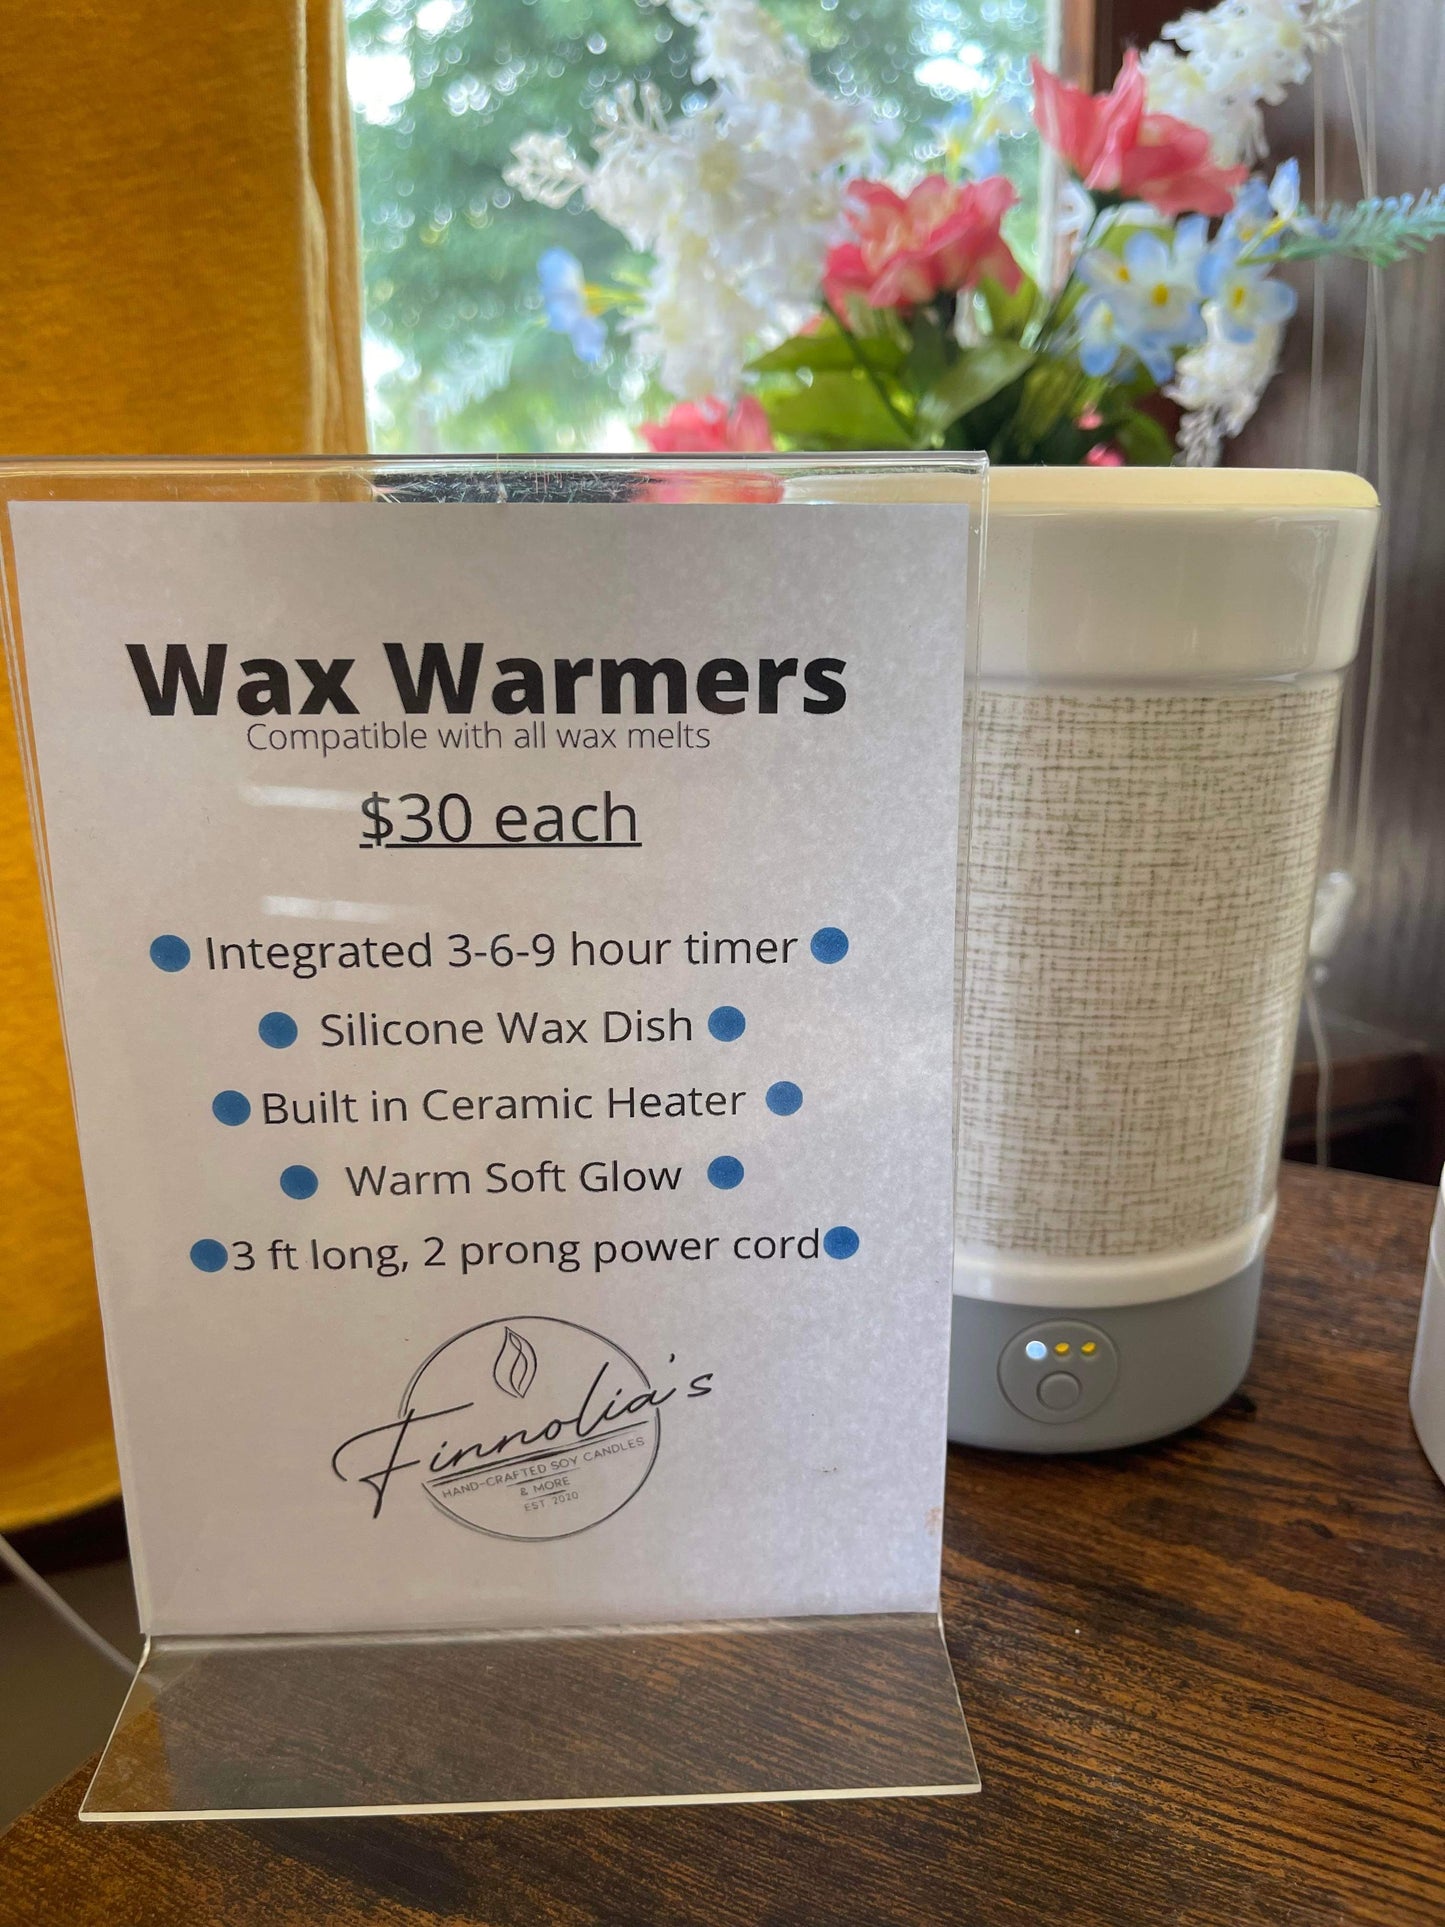 Happy Wax Warmer